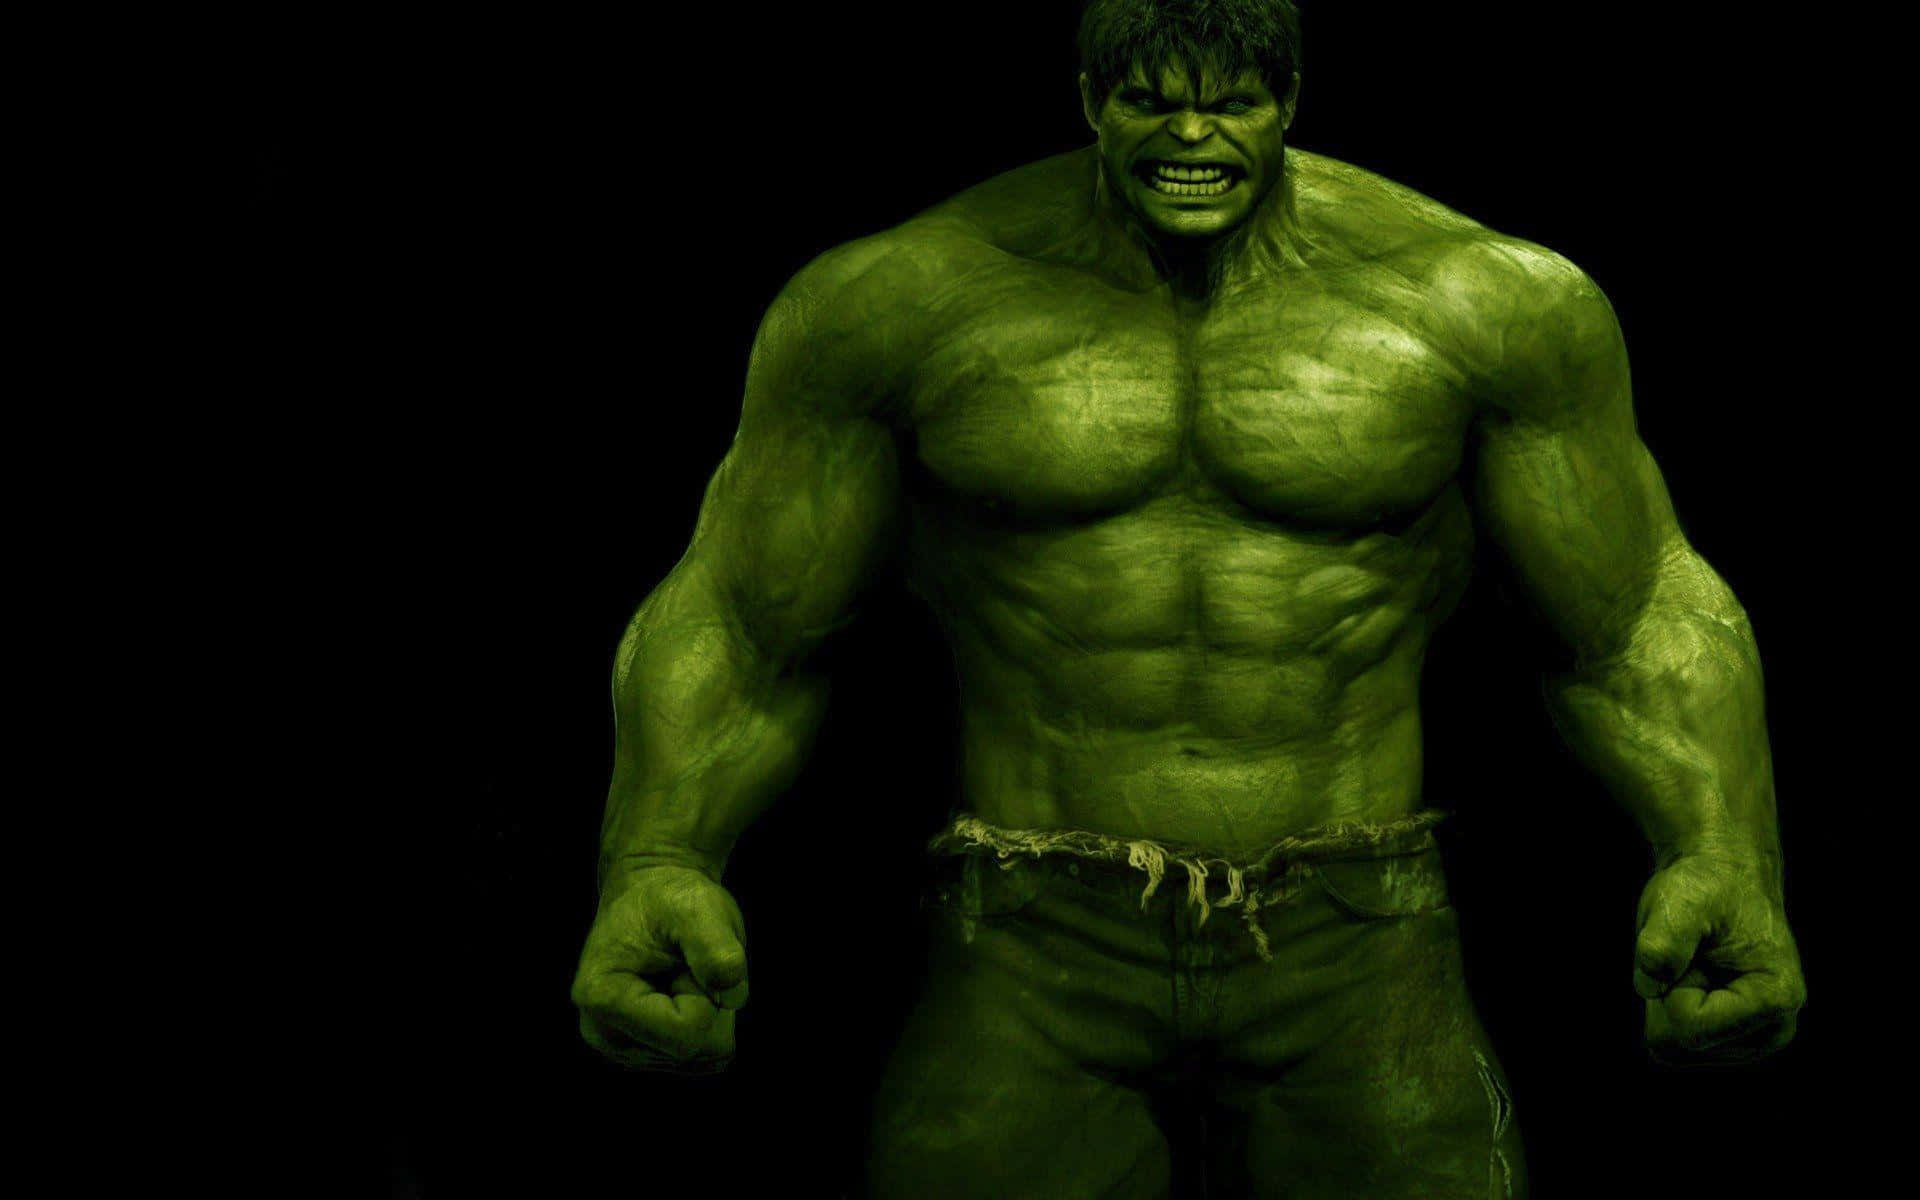 Incredible Hulk tapet er perfekt for fans af superhelte.